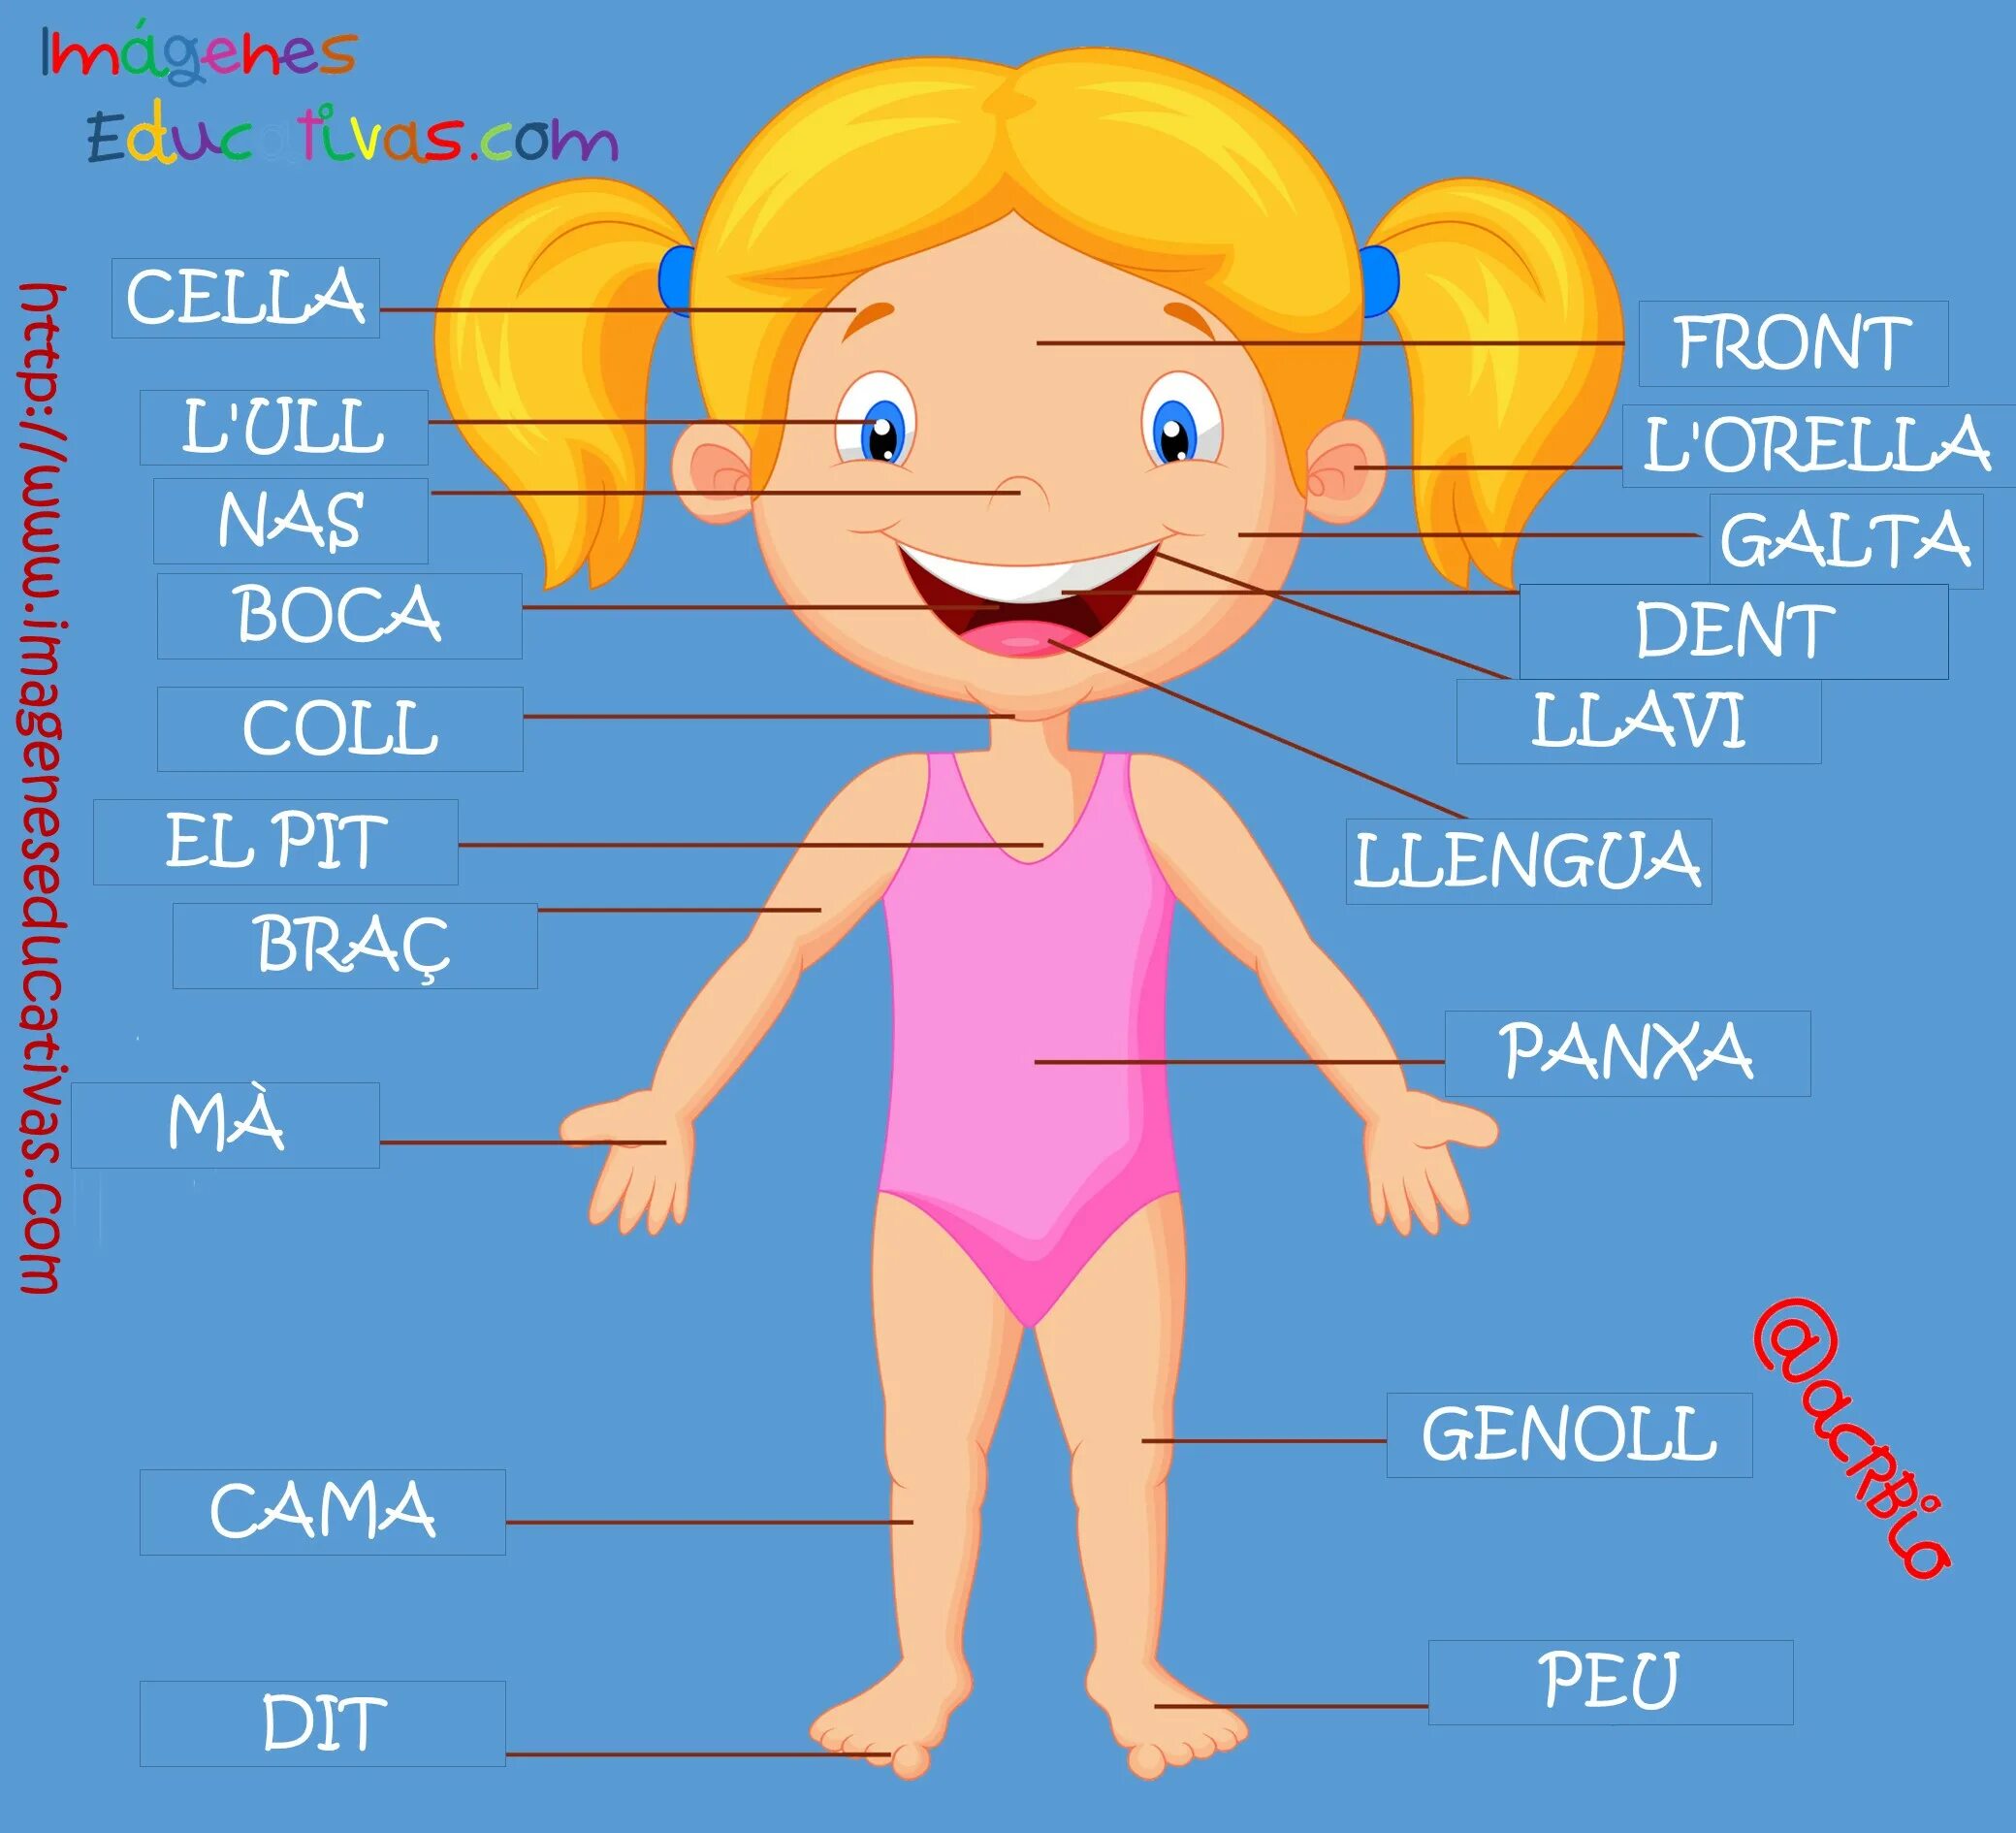 Части тела человека на испанском. Части тела на испанском для детей. Названия частей тела на испанском. Тело человека на испанском языке.